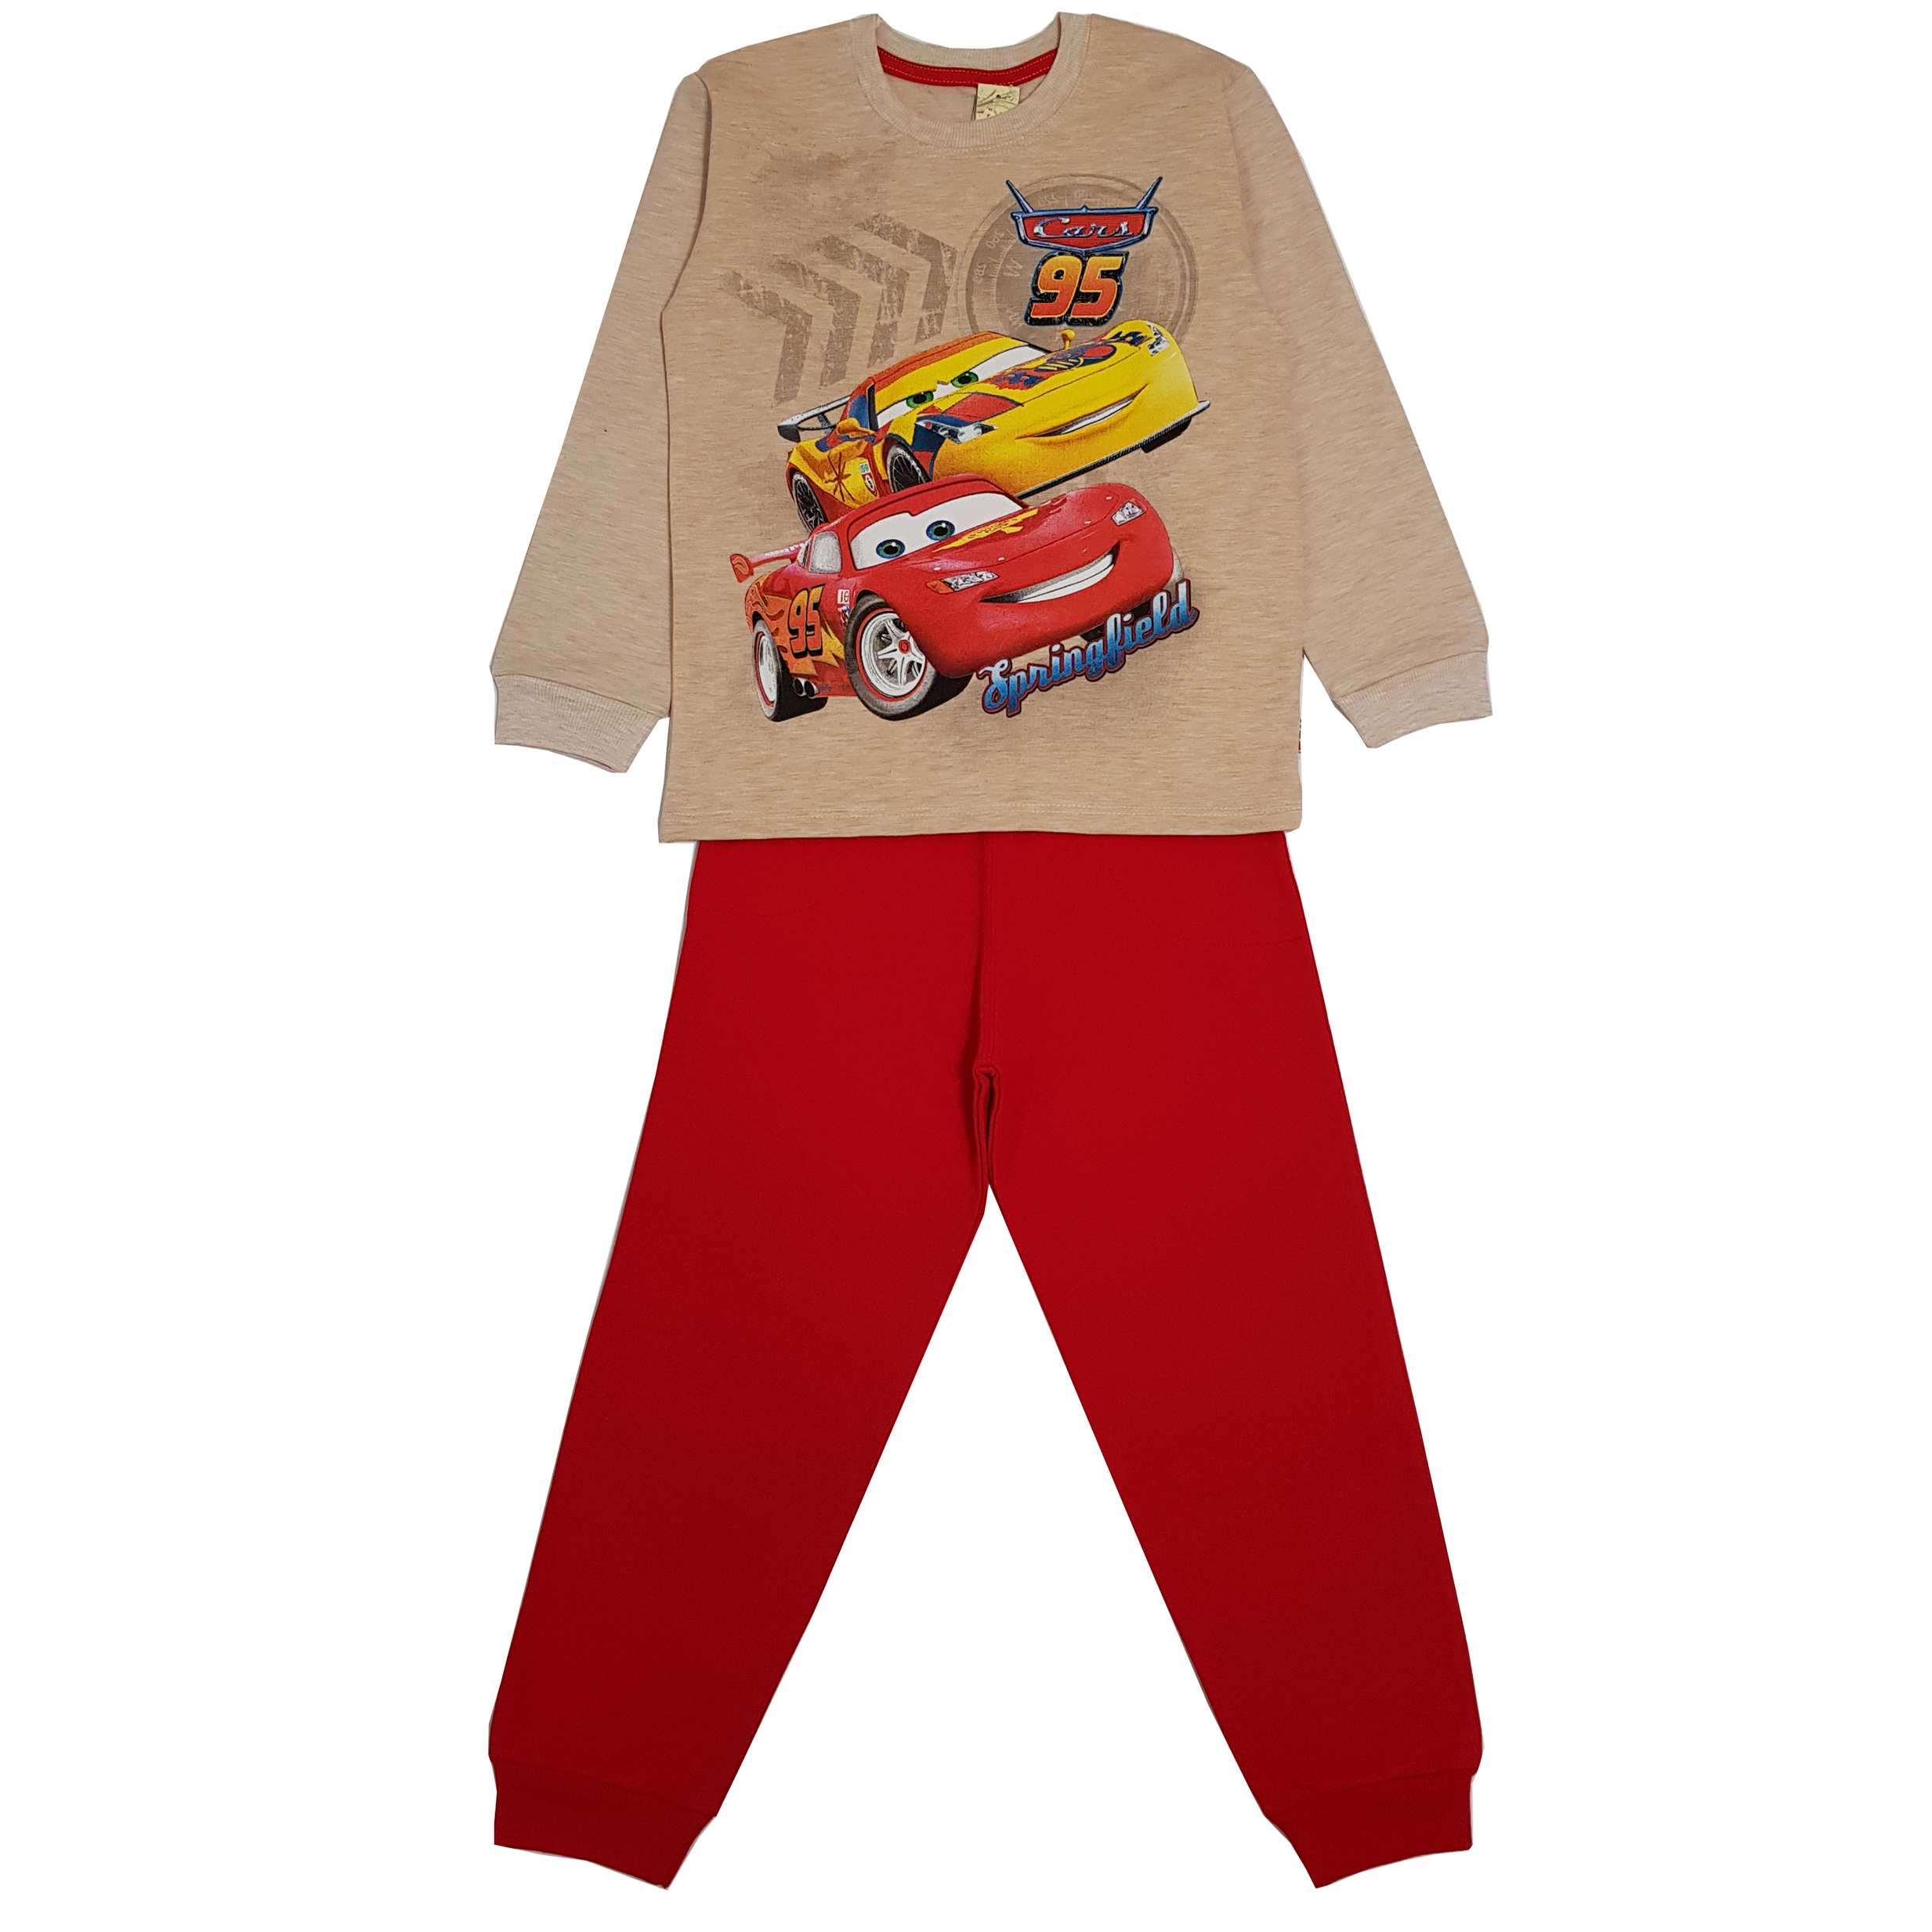 ست تی شرت و شلوار پسرانه مدل مک کوئین رنگ قرمز